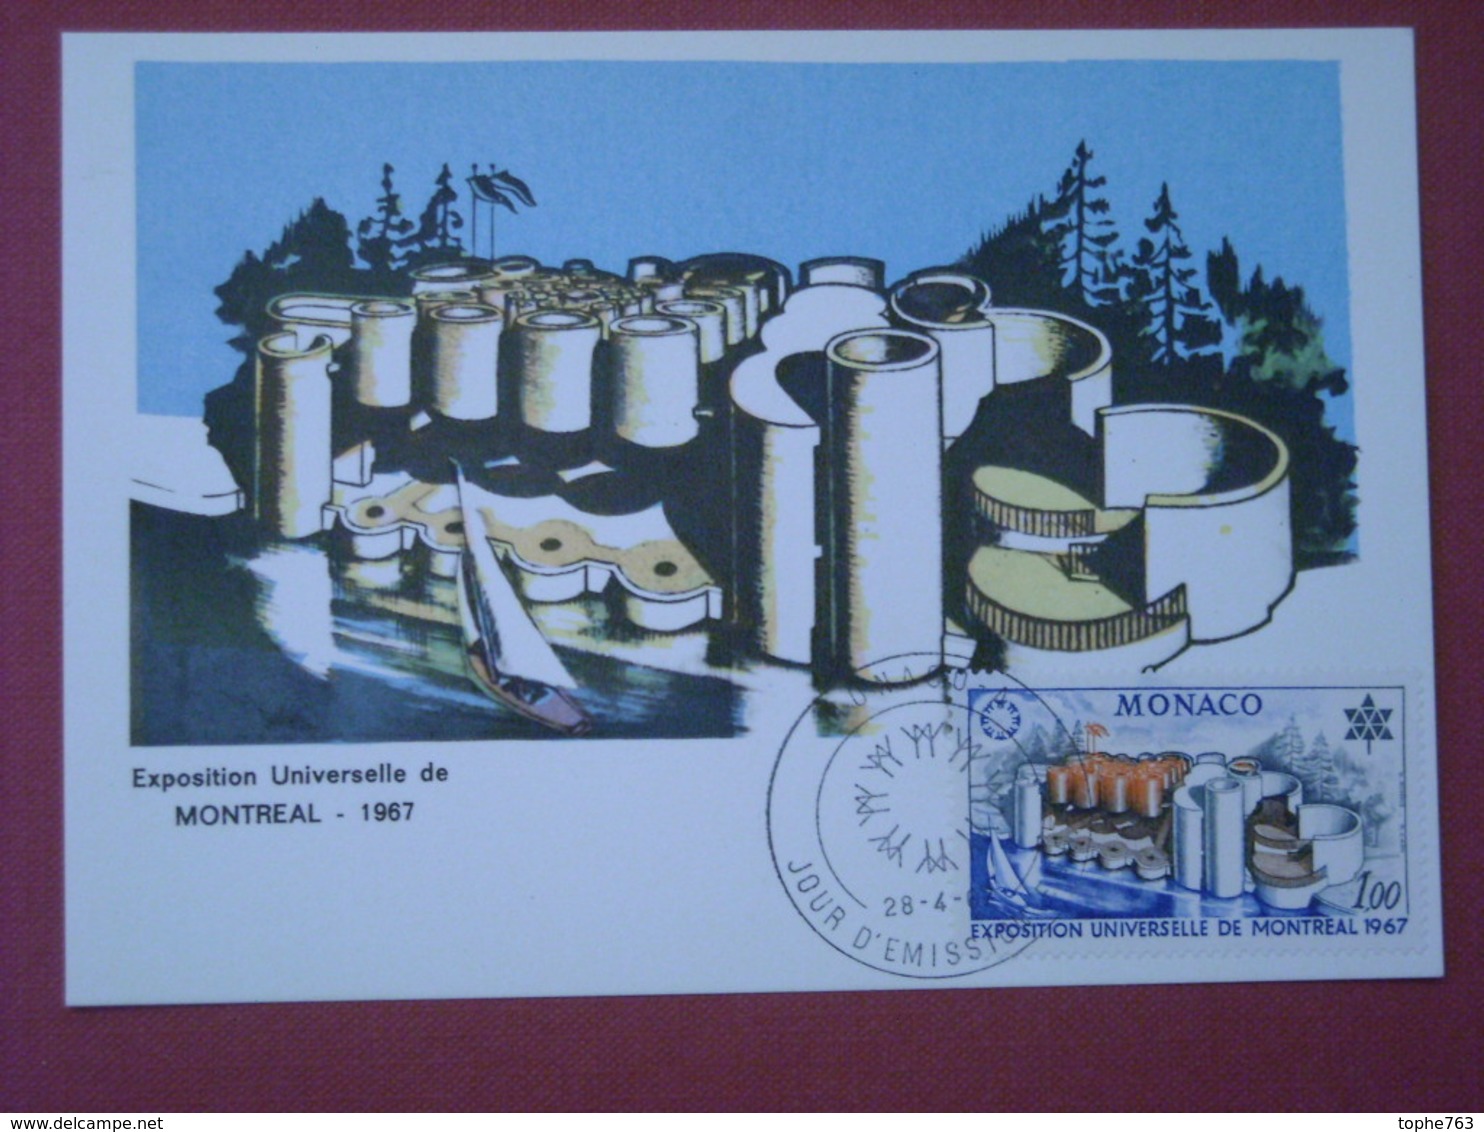 Monaco - Carte Postale Timbrée , 28/04/1967 , Premier Jour D'Emission , Exposition Universelle De Montréal - Postmarks